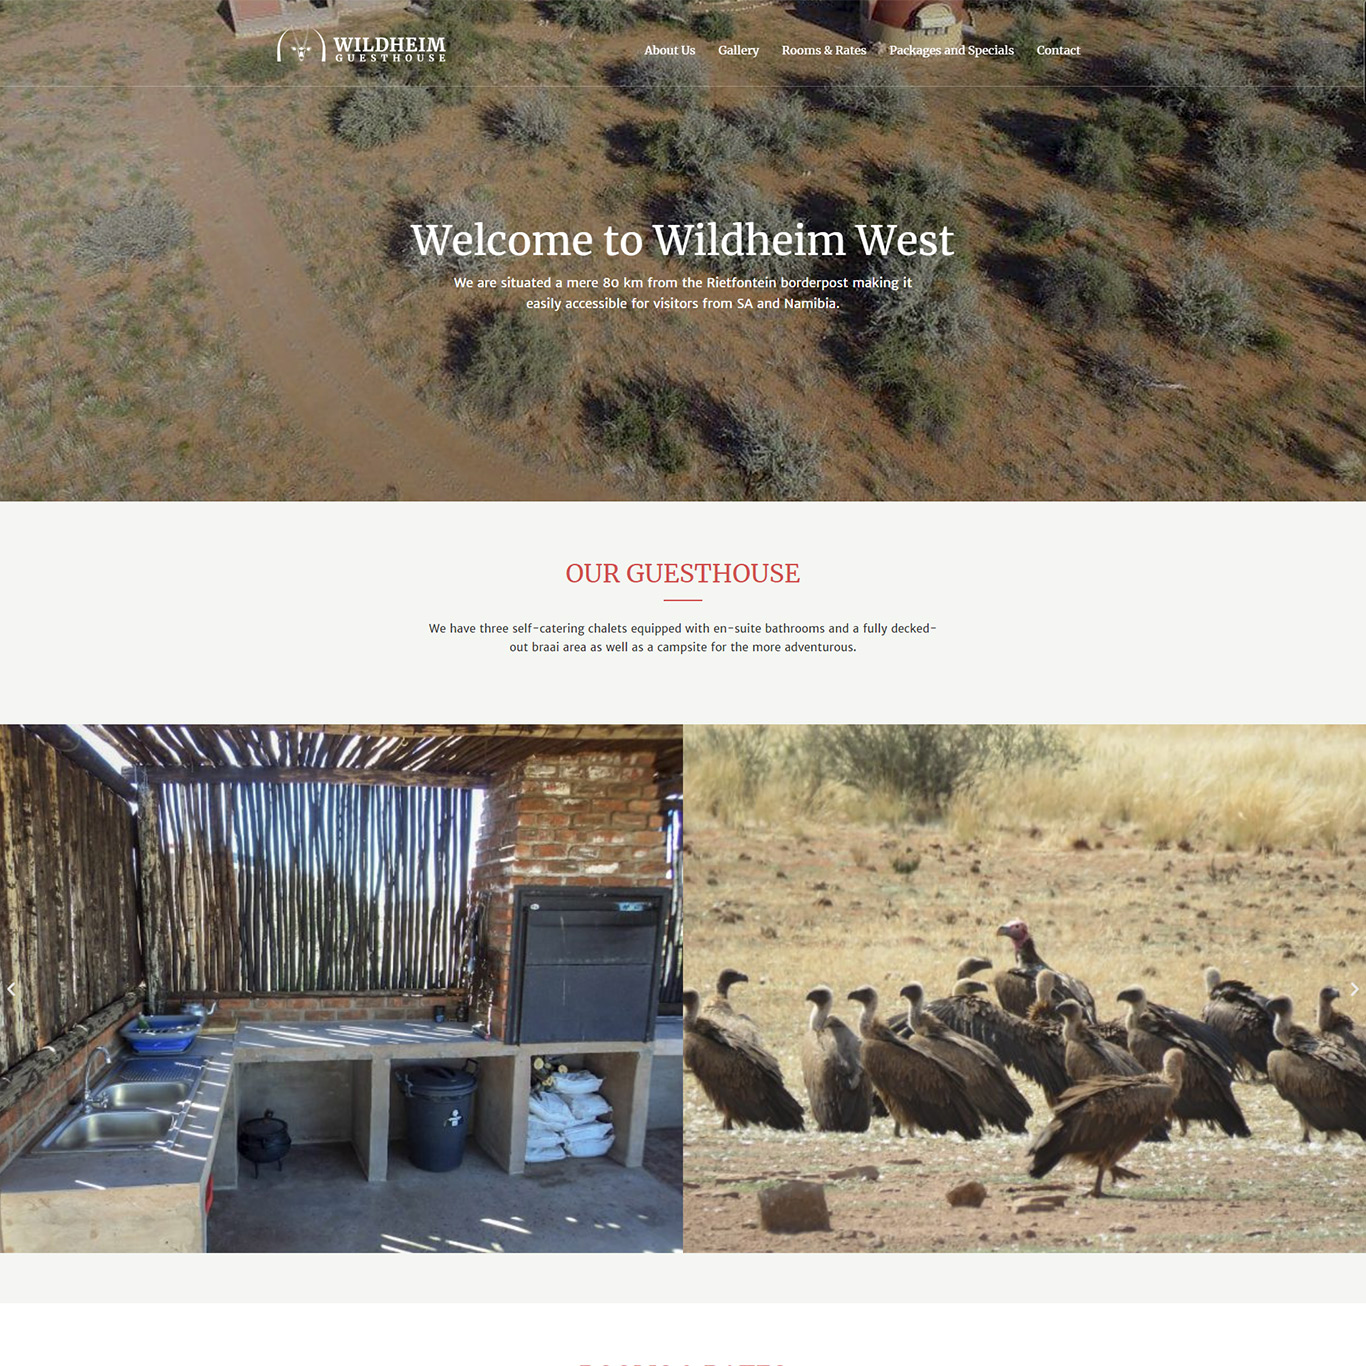 Wildheim Kalahari guesthouse website homepage